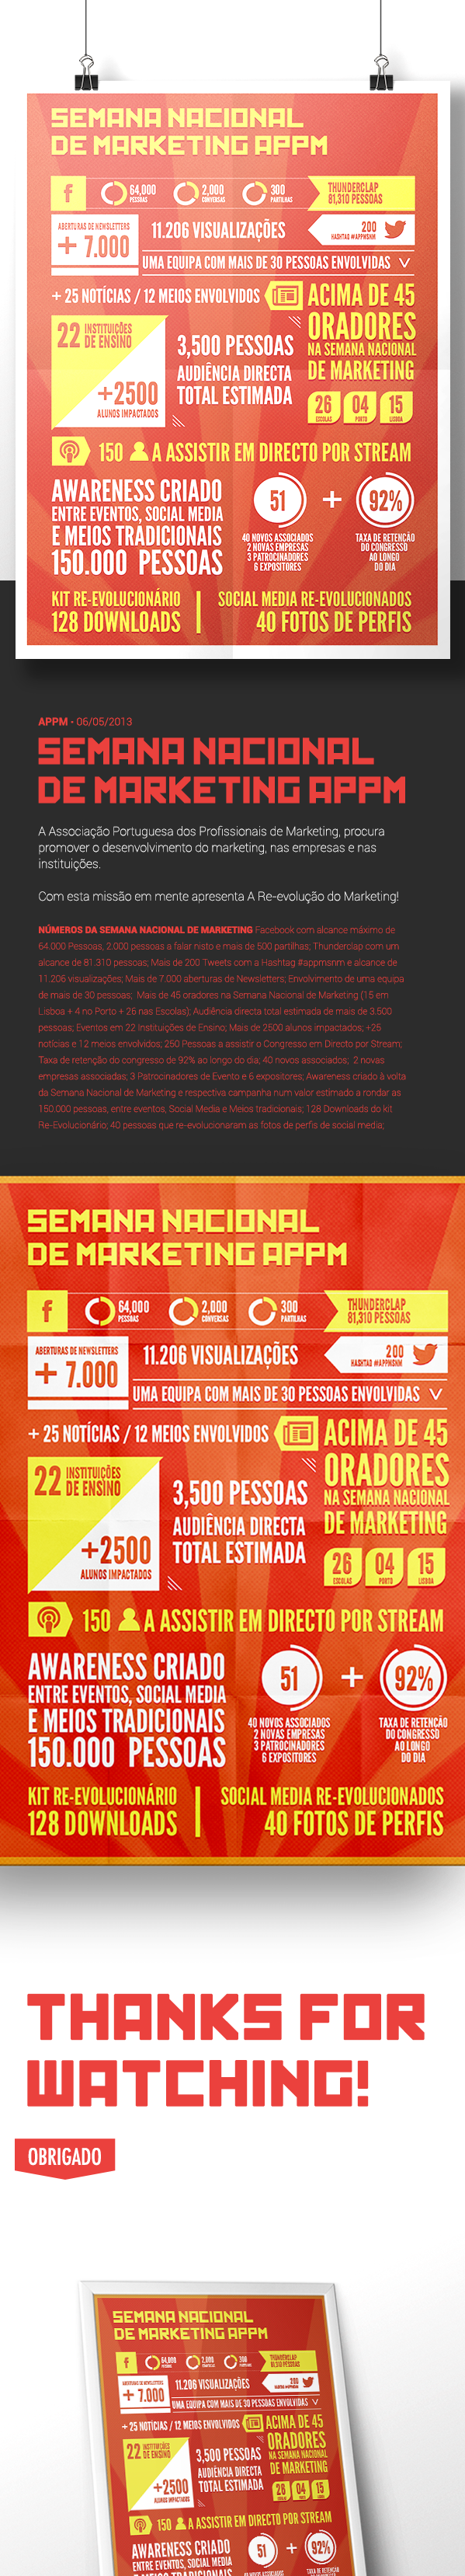 appm marketing   semana nacional week associação portuguesa portuguese profissionais professional